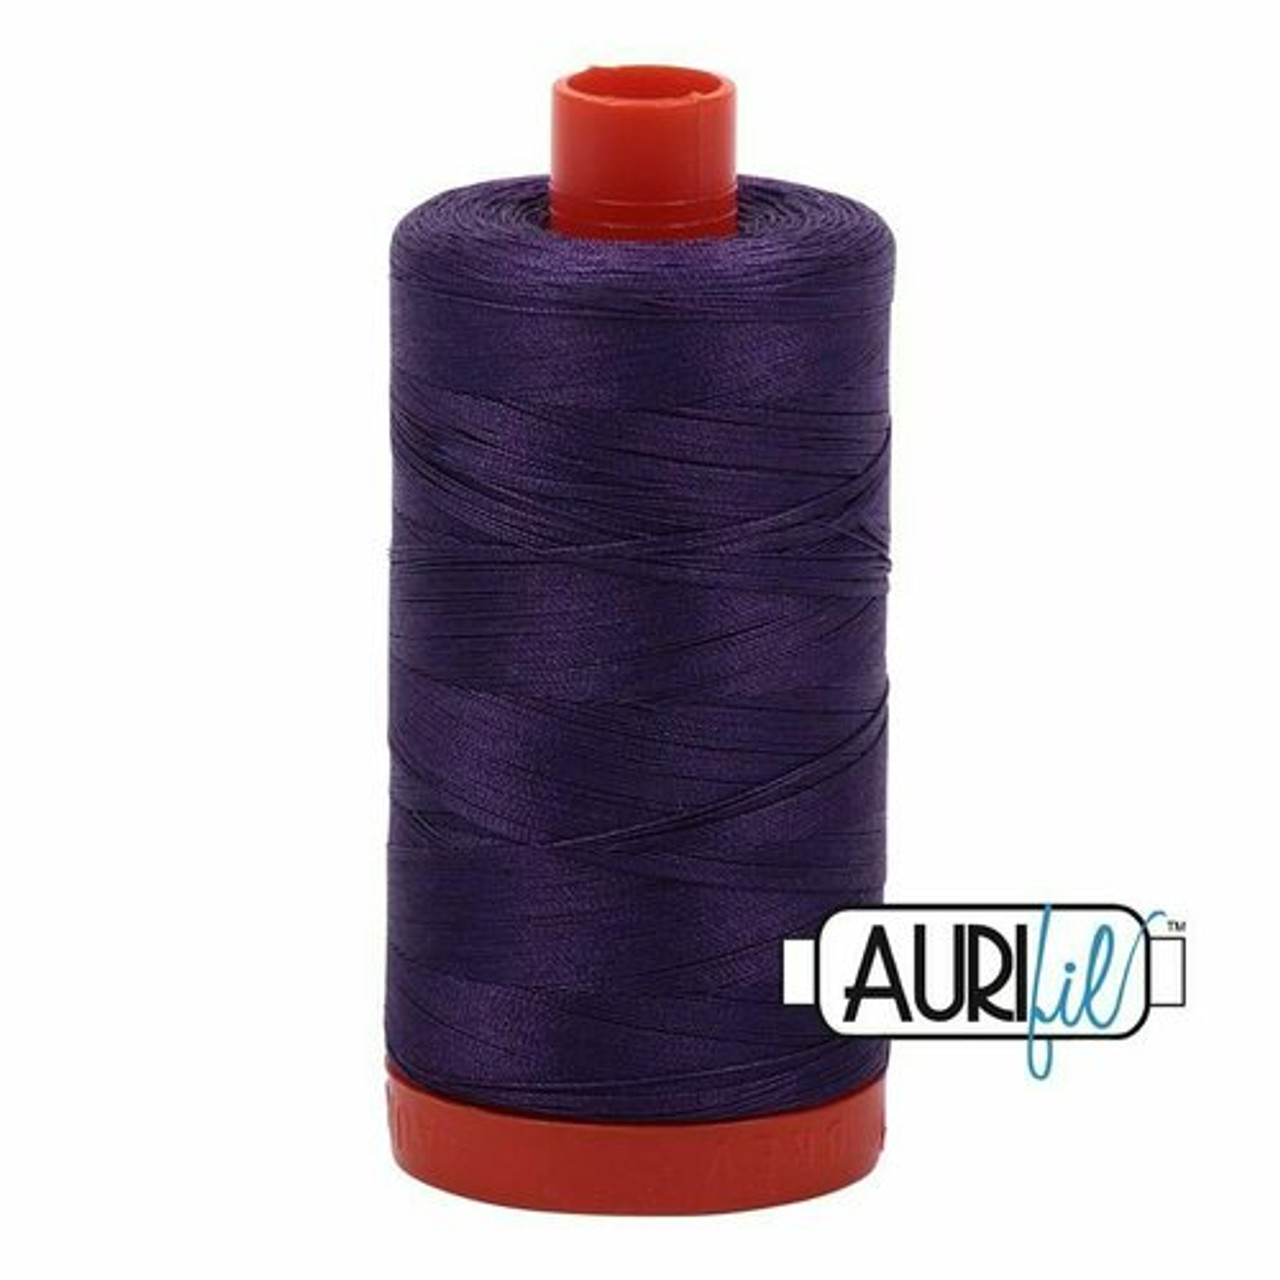 Aurifil 2582 - Dark Violet